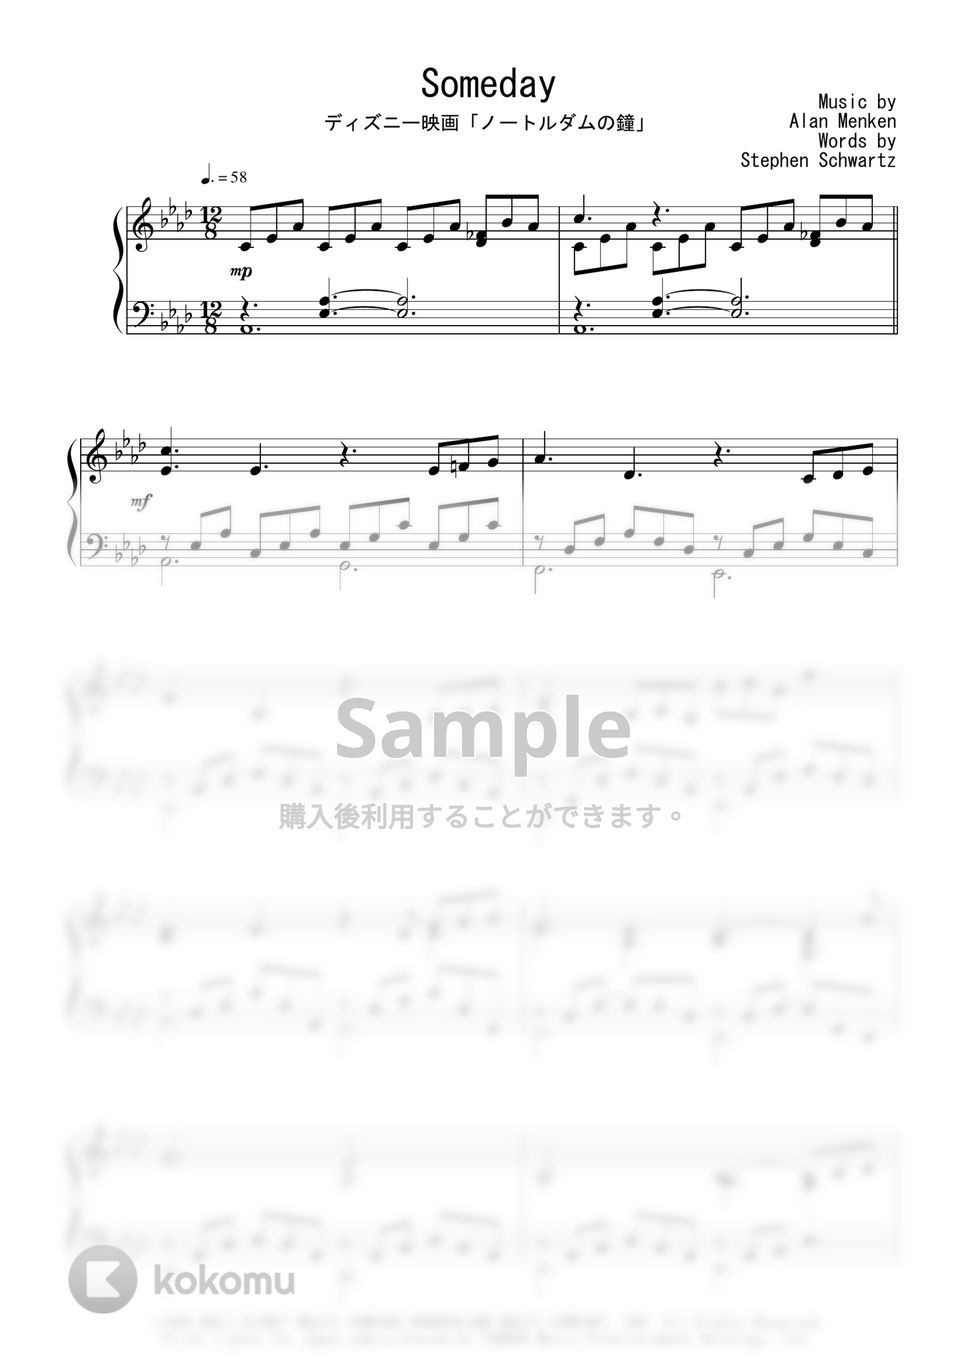 ディズニー映画『ノートルダムの鐘』OST - Someday 楽譜 by Peony